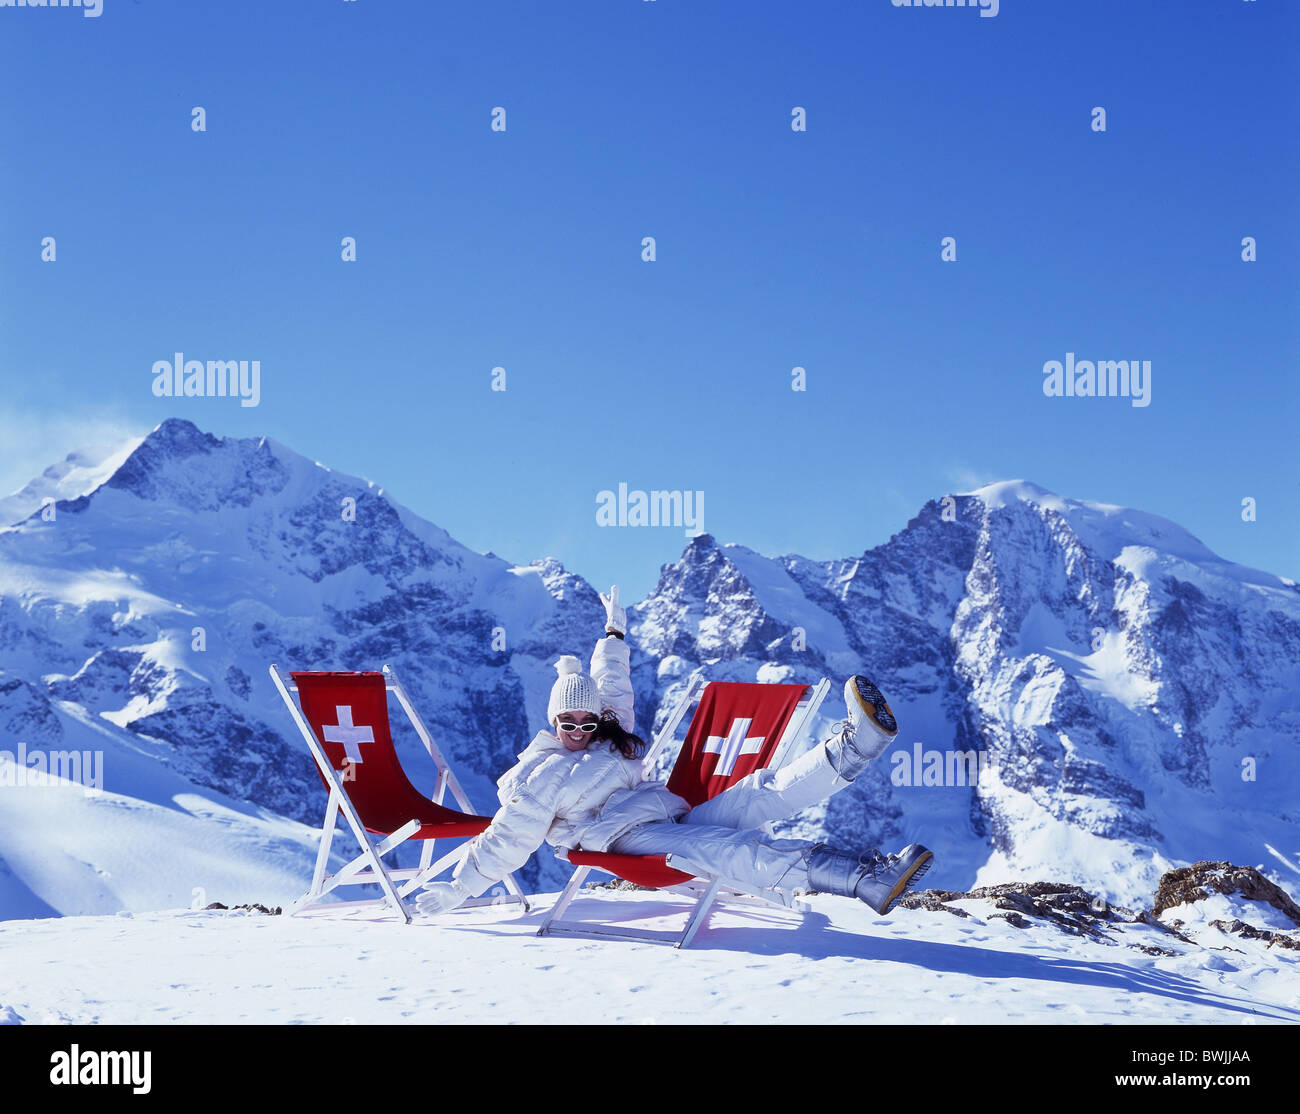 Frau Mütze Hut Winter Jacke Spaß Witz Freude Winter Liegestuhl nehmen es  einfach entspannen Schweizer Kreuz Sonnen Berg Stockfotografie - Alamy